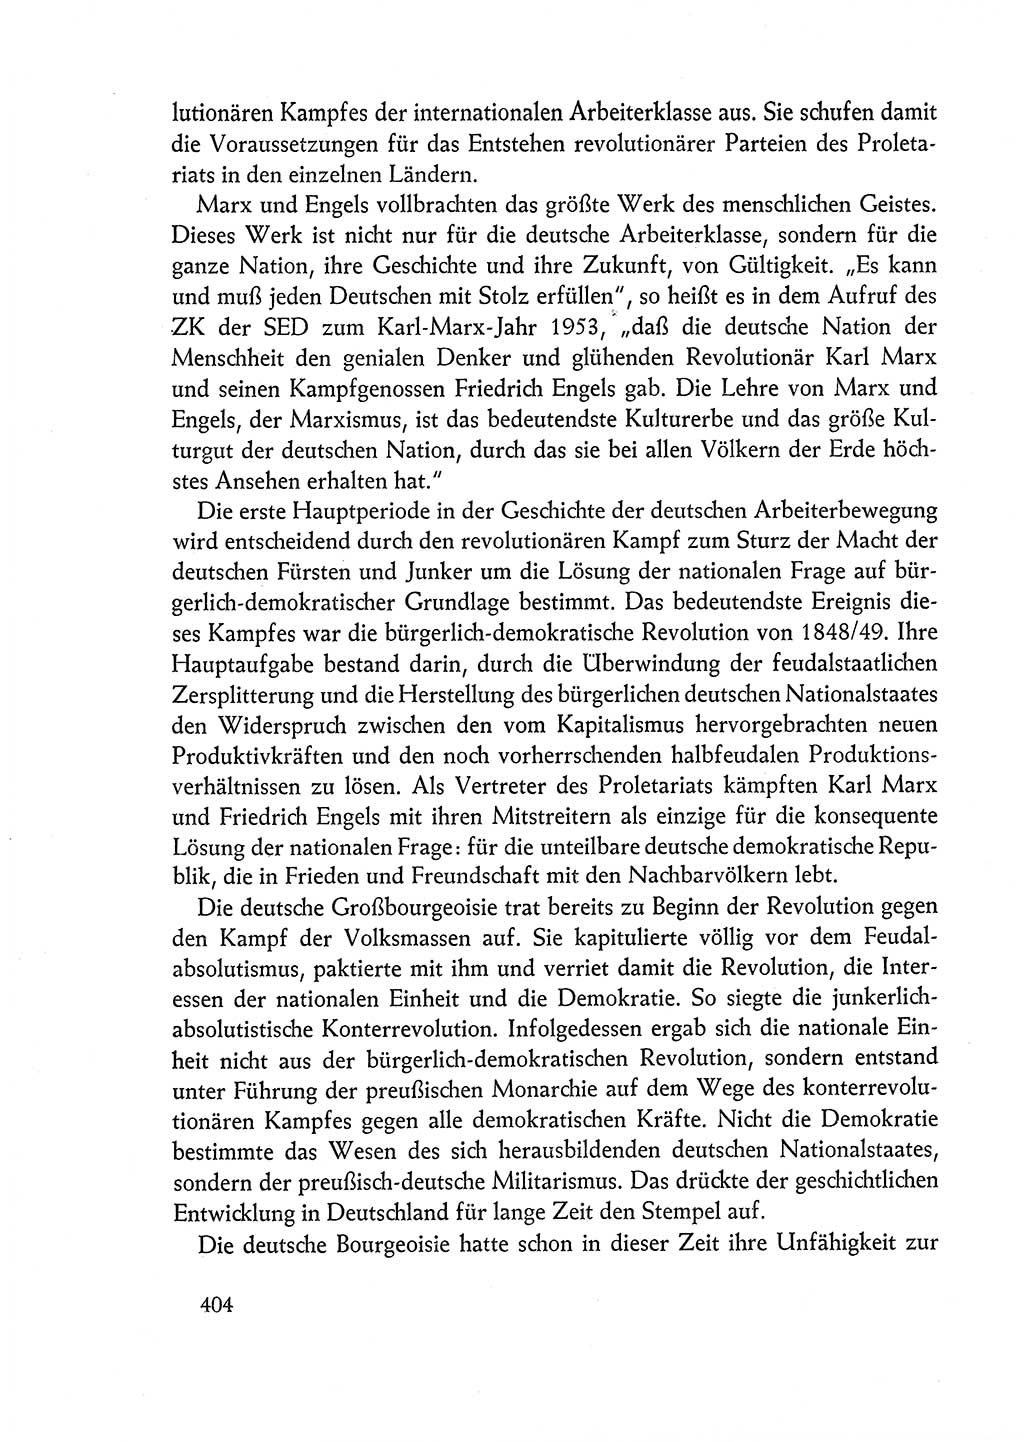 Dokumente der Sozialistischen Einheitspartei Deutschlands (SED) [Deutsche Demokratische Republik (DDR)] 1962-1963, Seite 404 (Dok. SED DDR 1962-1963, S. 404)